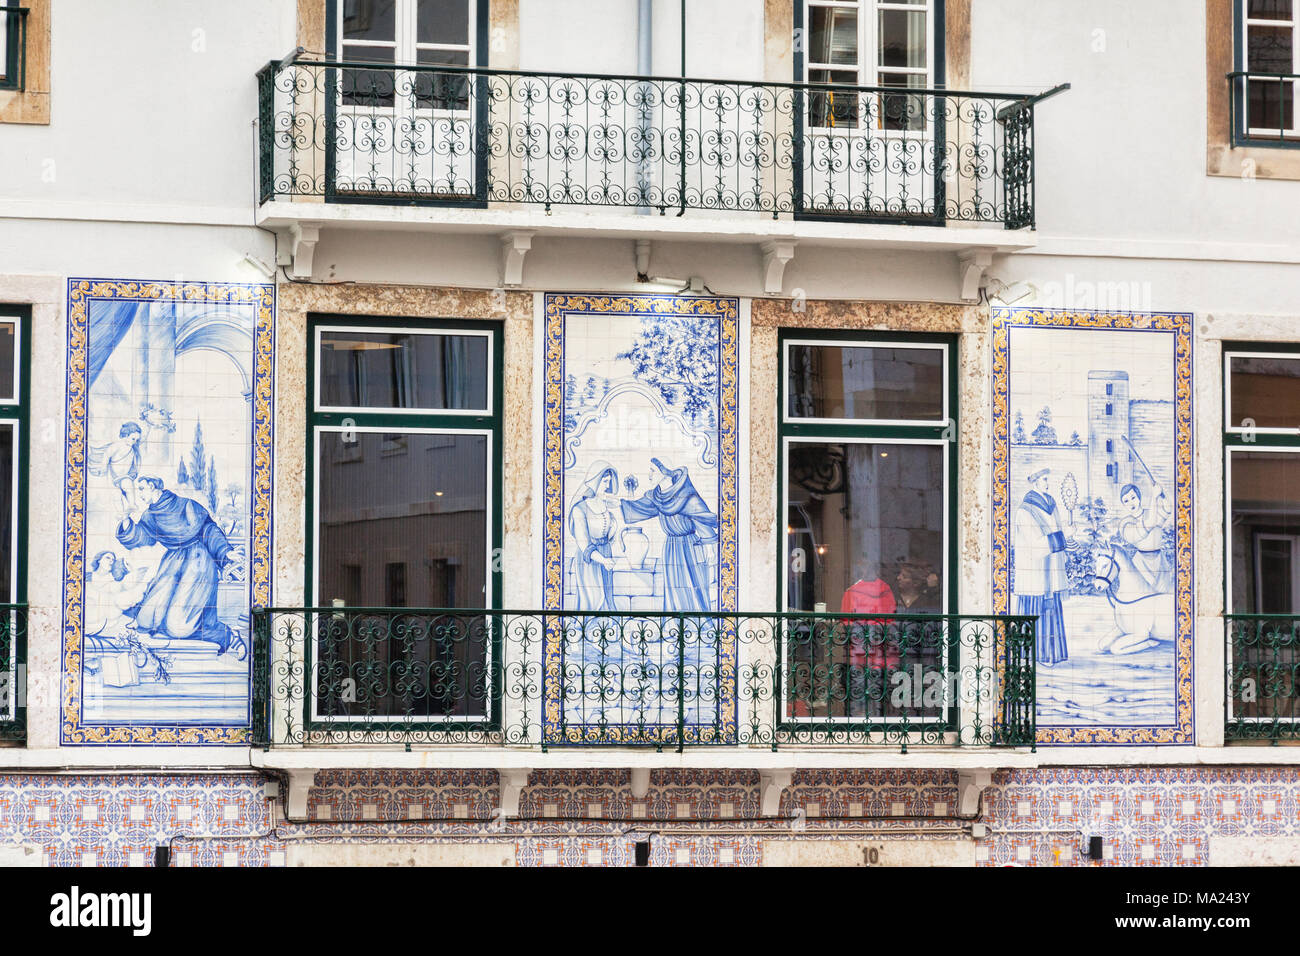 1. März 2018: Lissabon, Portugal - Traditionelles Haus in Lissabons Altstadt, dekoriert mit Keramikfliesen Bilder in Blau. Stockfoto